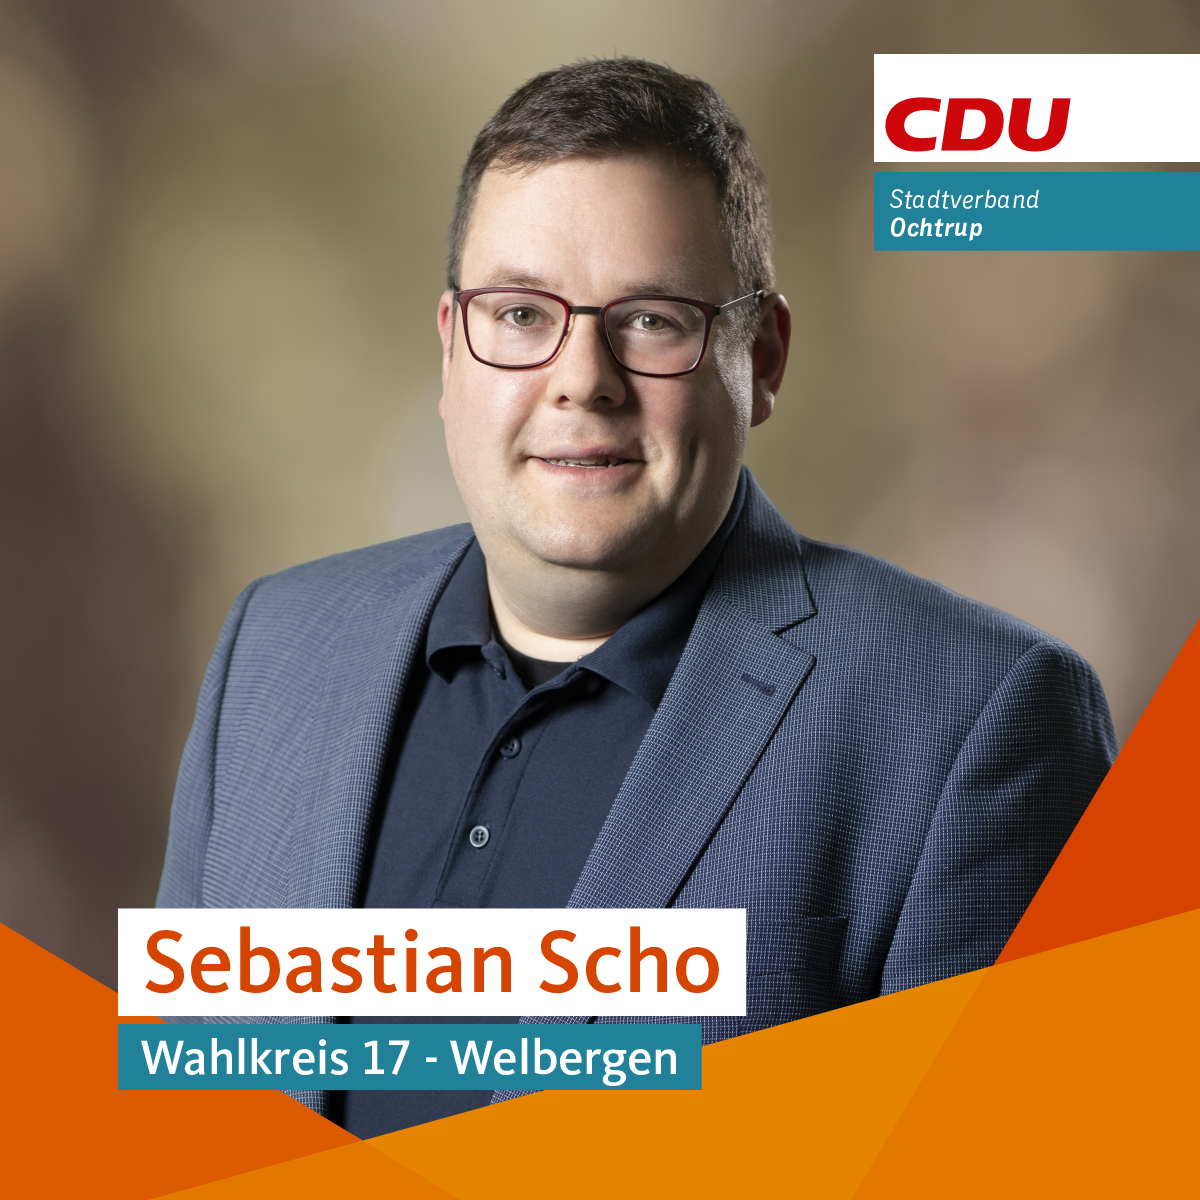 Scho, Sebastian (CDU)